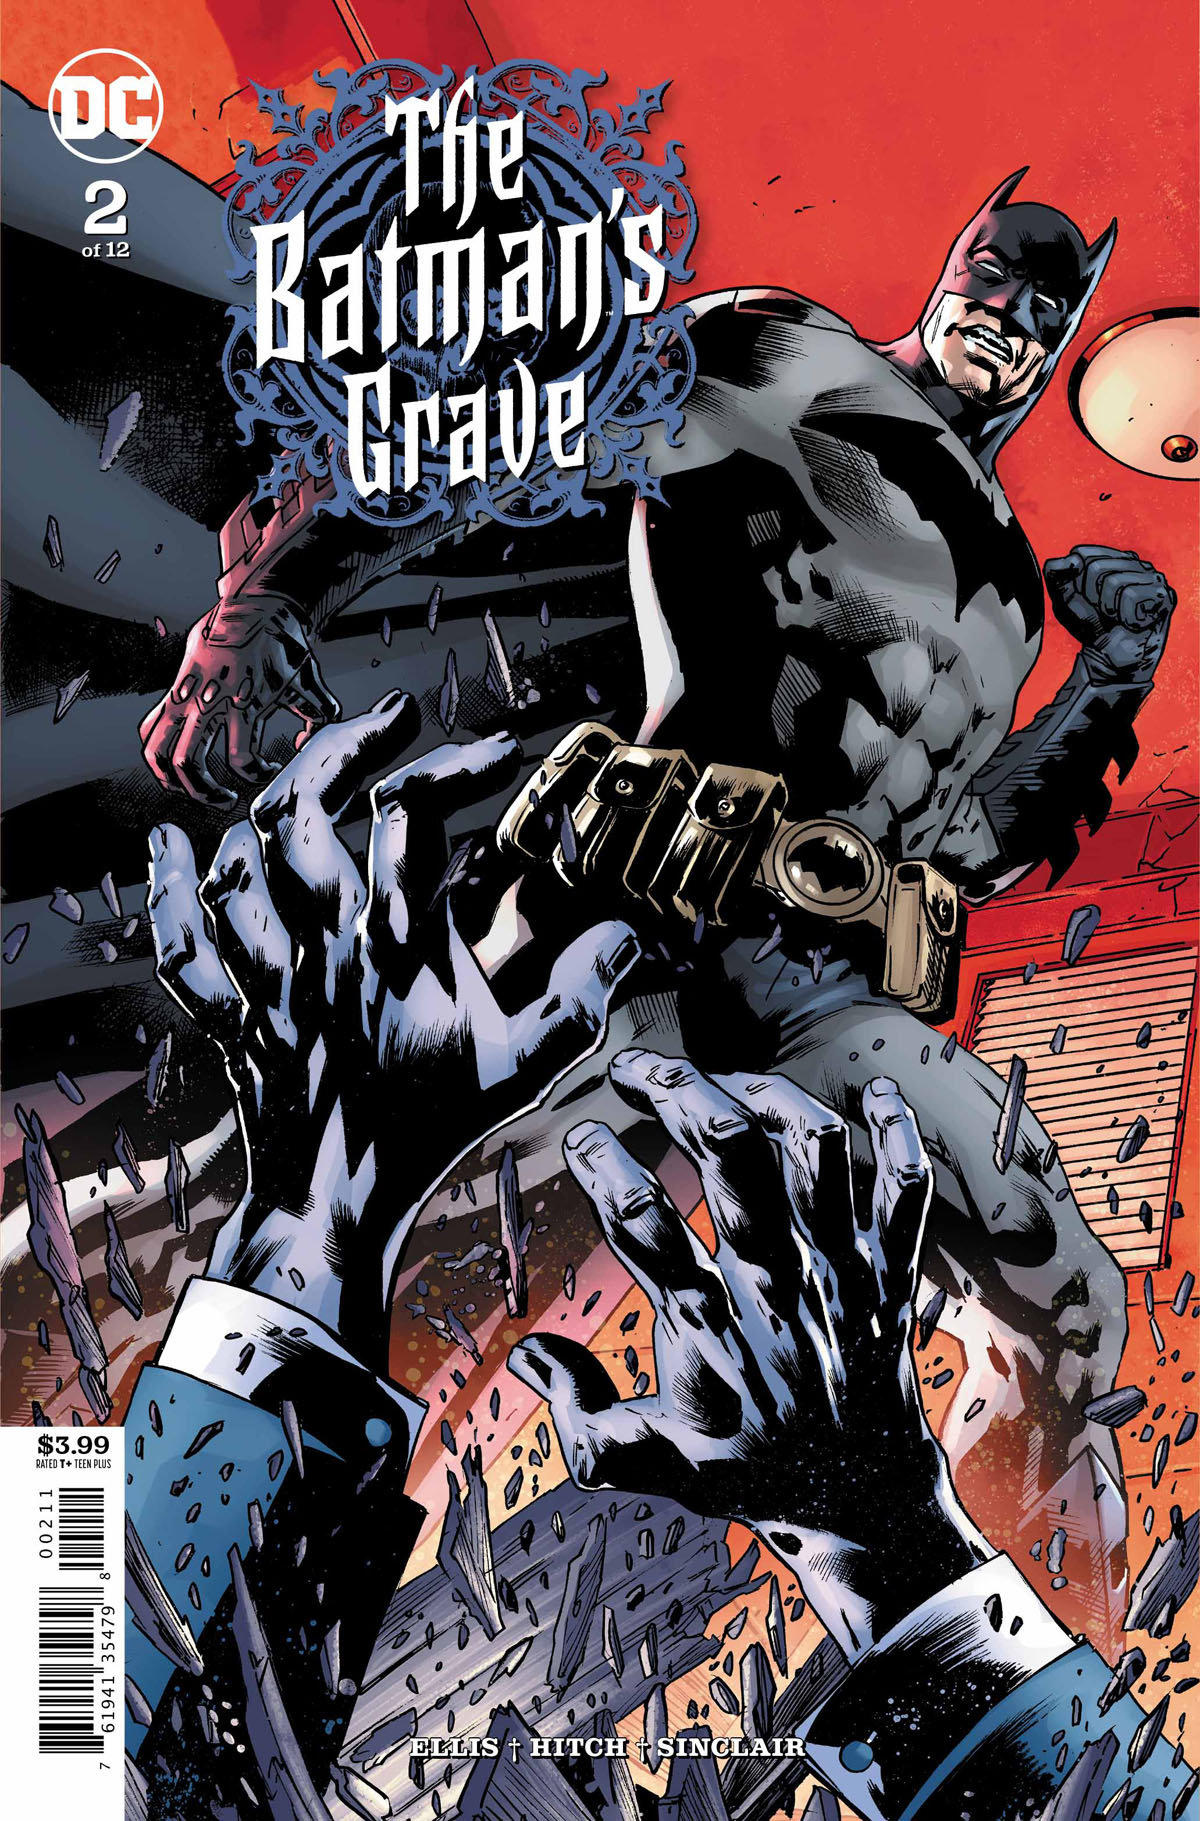 The Batman's Grave #2 cover